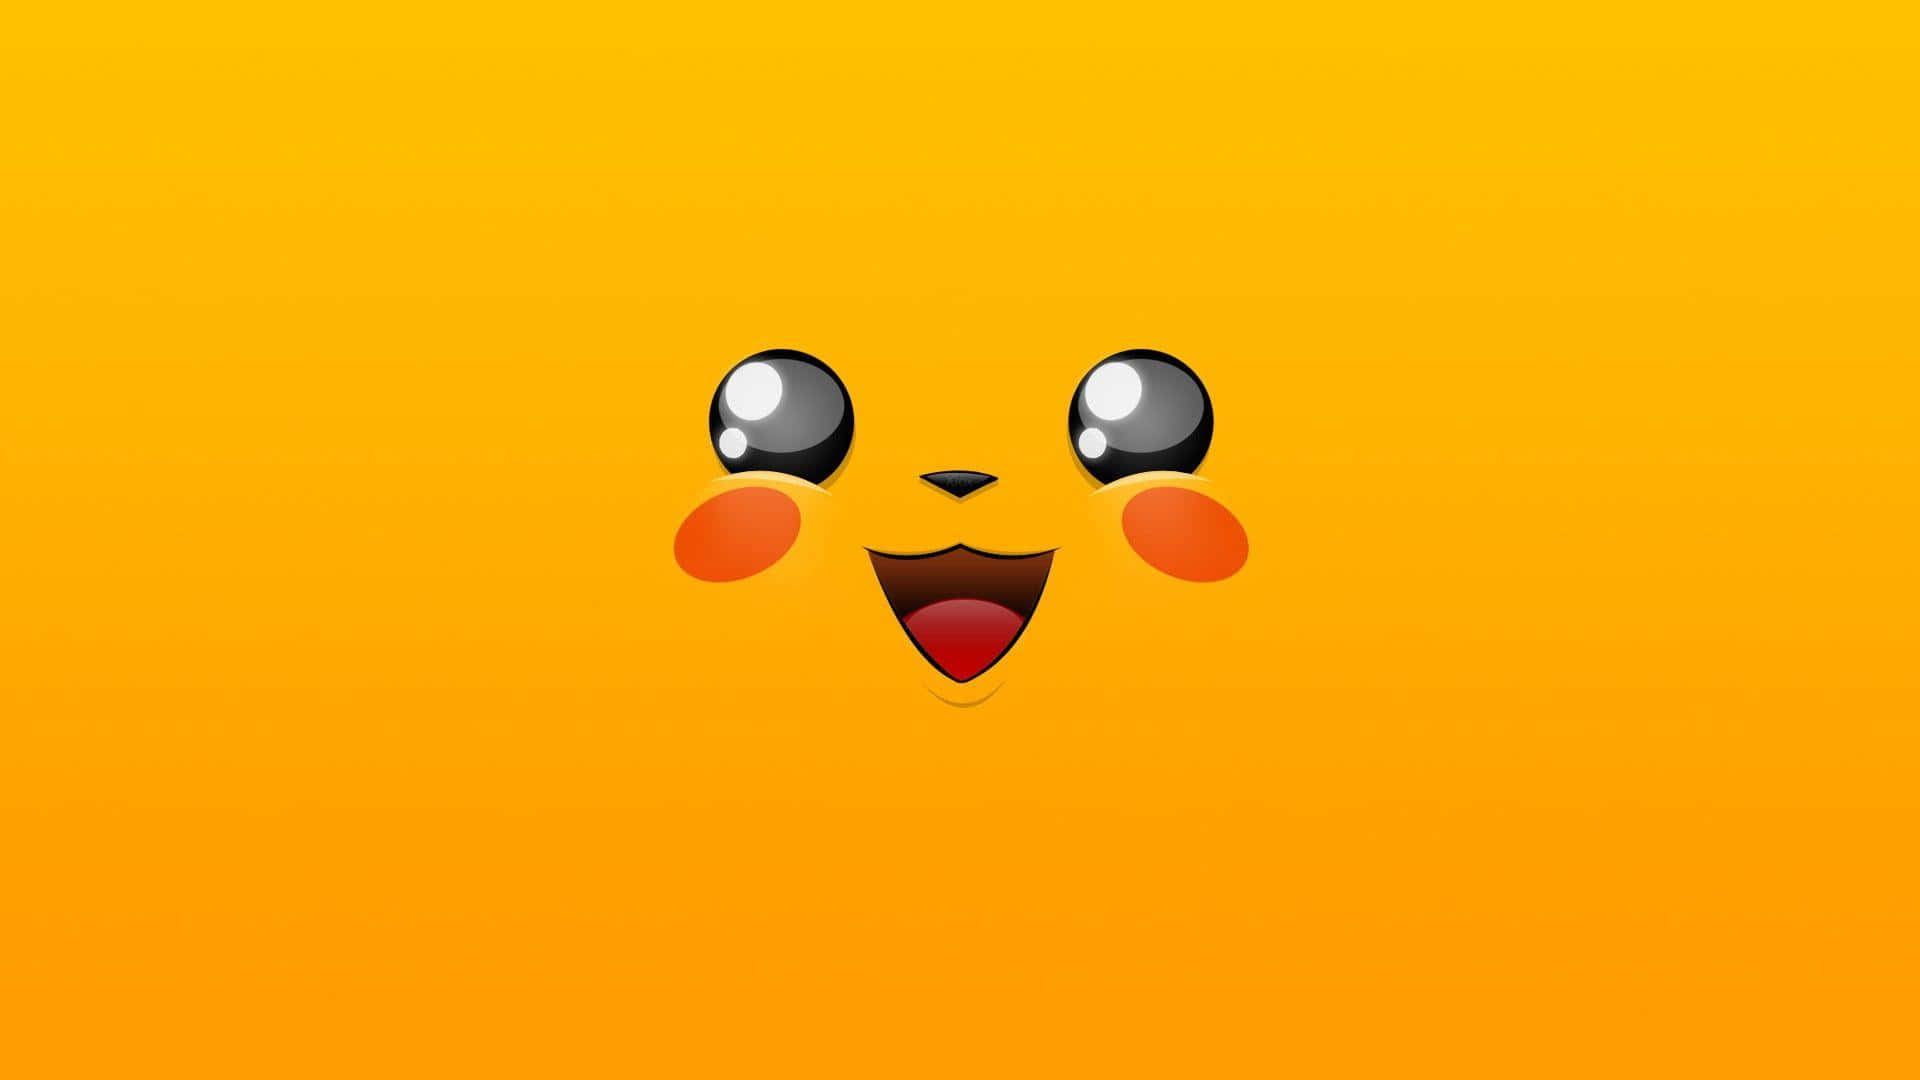 Ennuttet Pikachu Er Her For At Sprede Lidt Glæde.